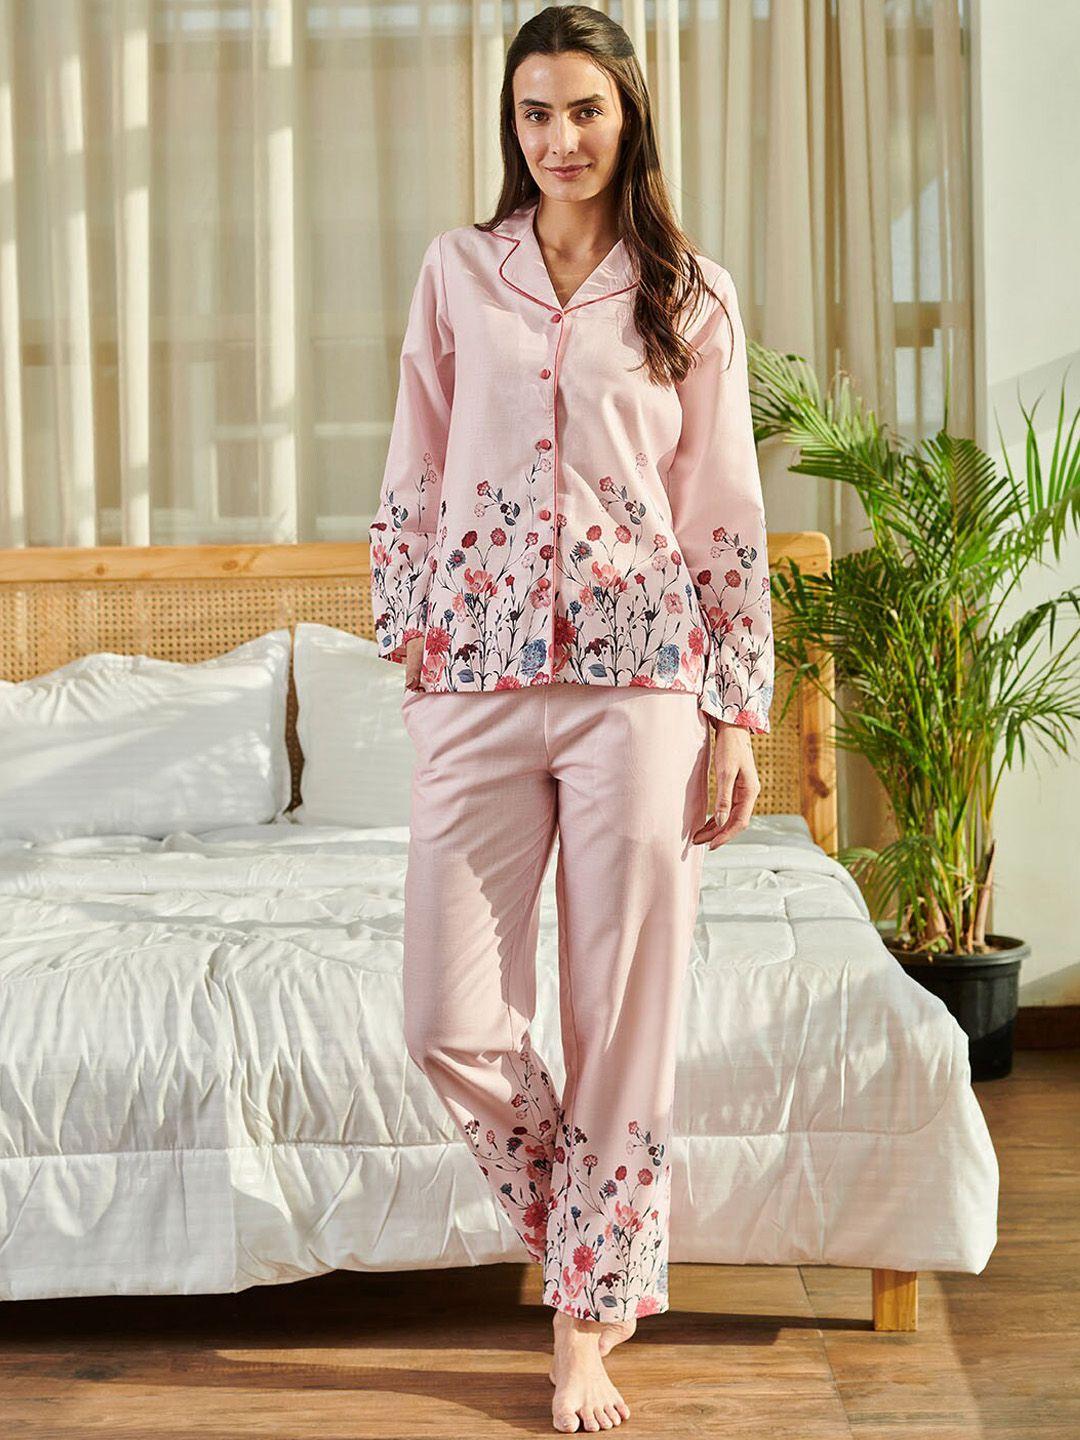 dusk-attire-printed-shirt-with-pyjamas-night-suit